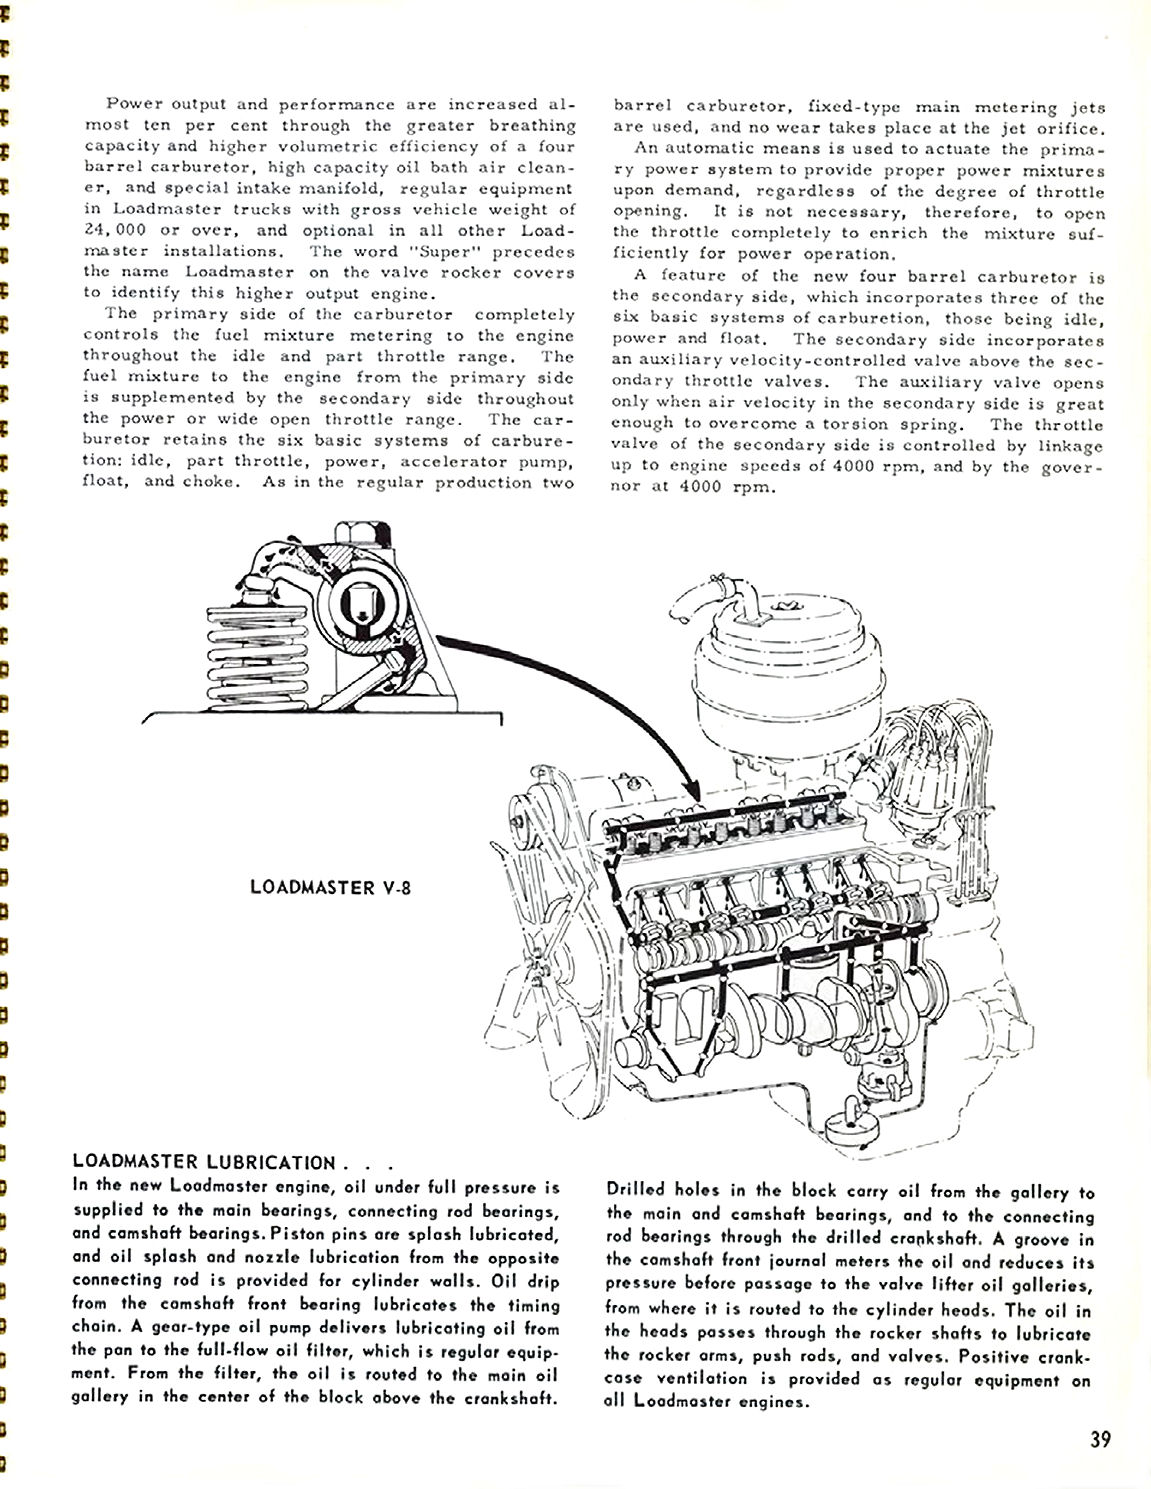 1956_Chevrolet_Truck_Engineering_Features-39